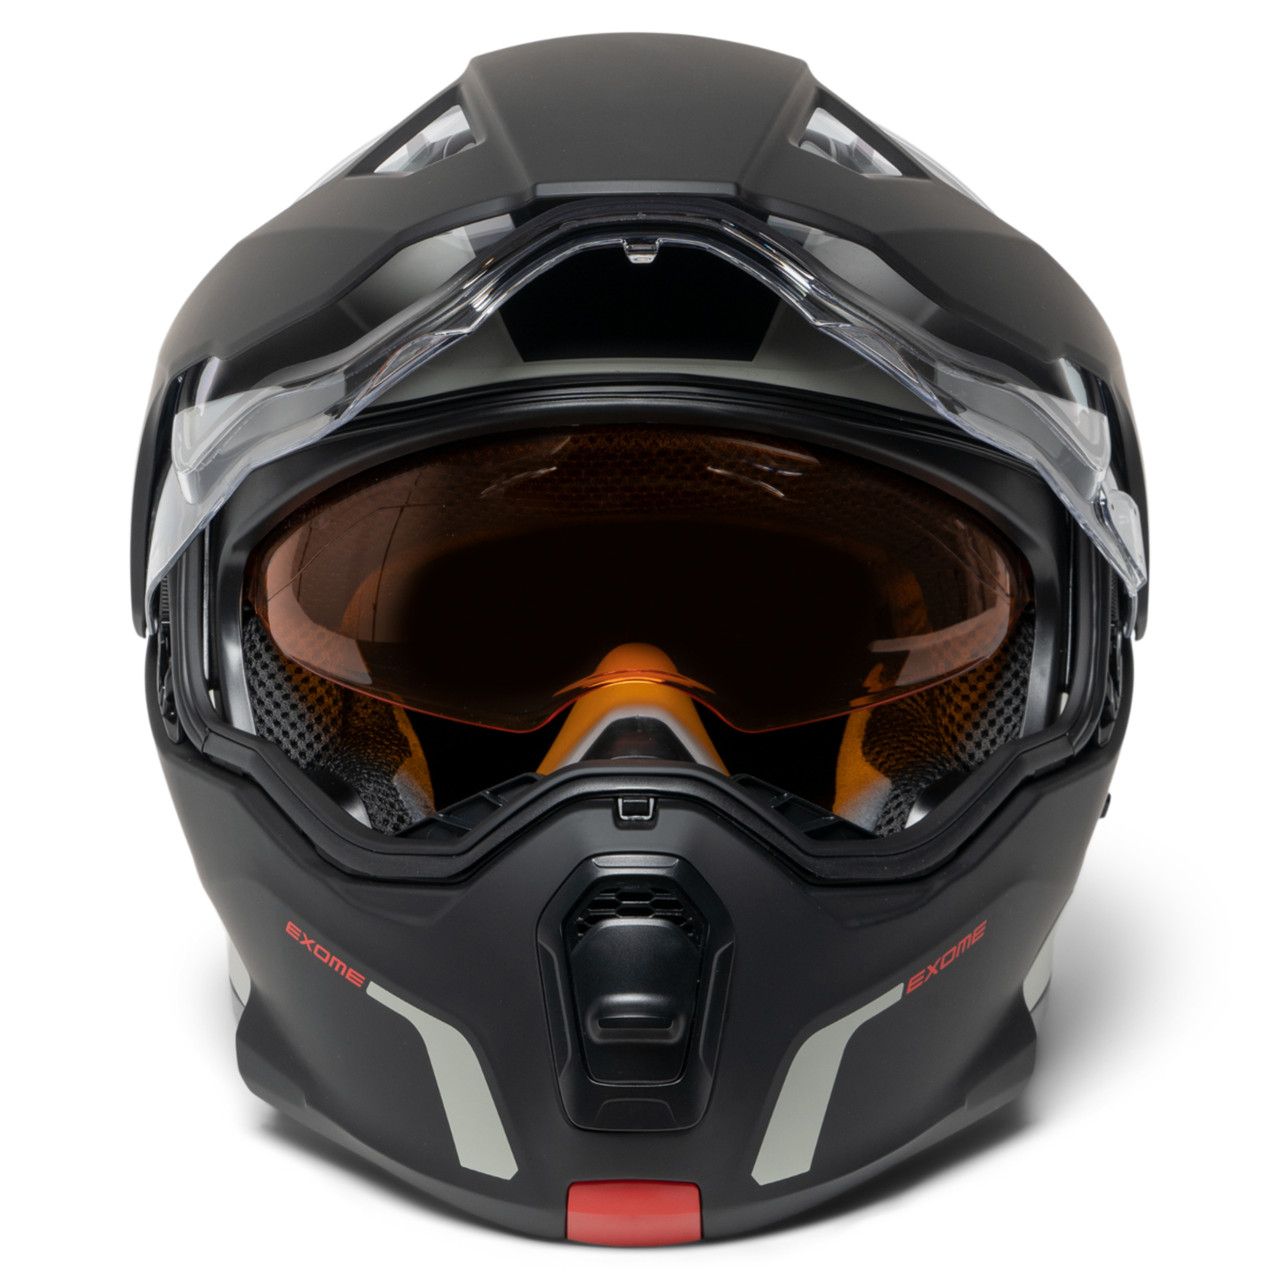 Ski-Doo New OEM Exome Sport Helmet (DOT), Unisex 2X-Large, 9290361409